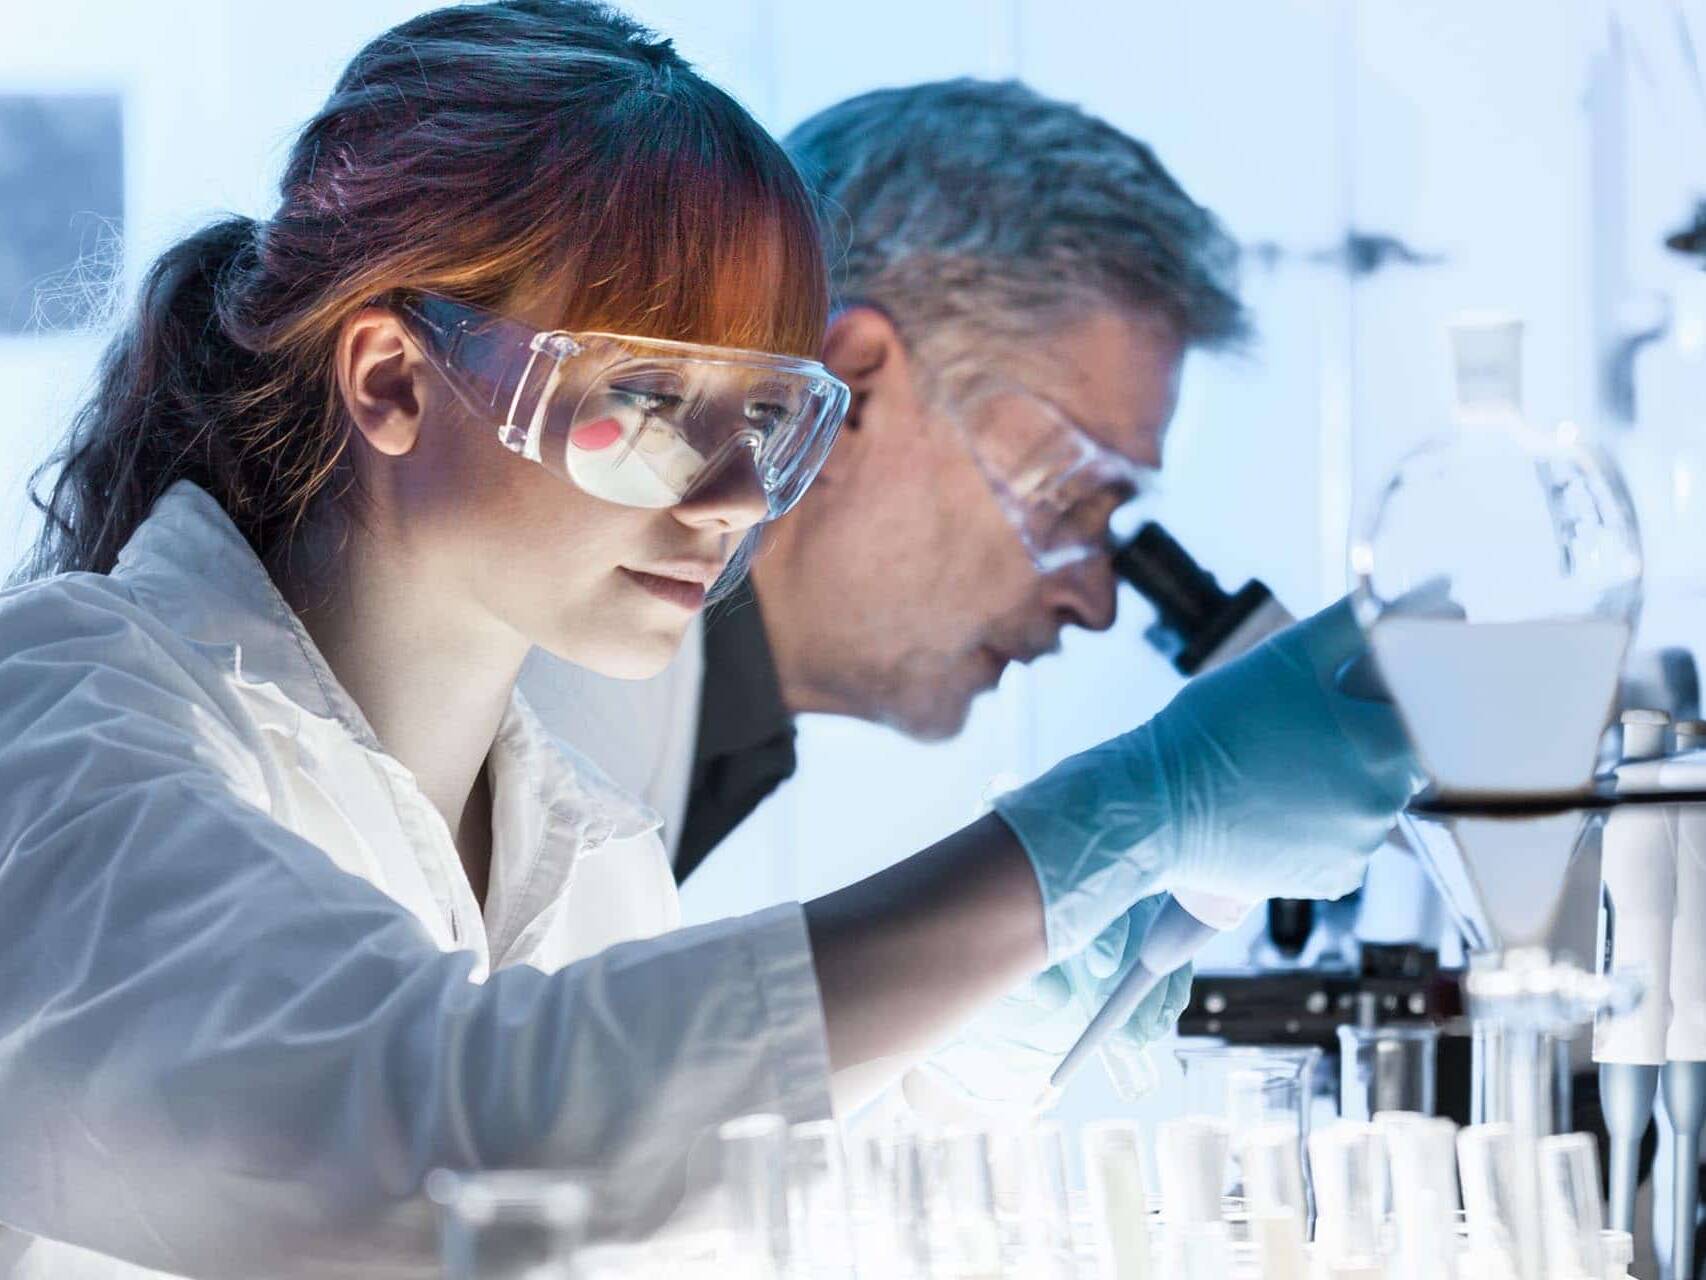 Uma mulher e um homem analisando amostras em um laboratório